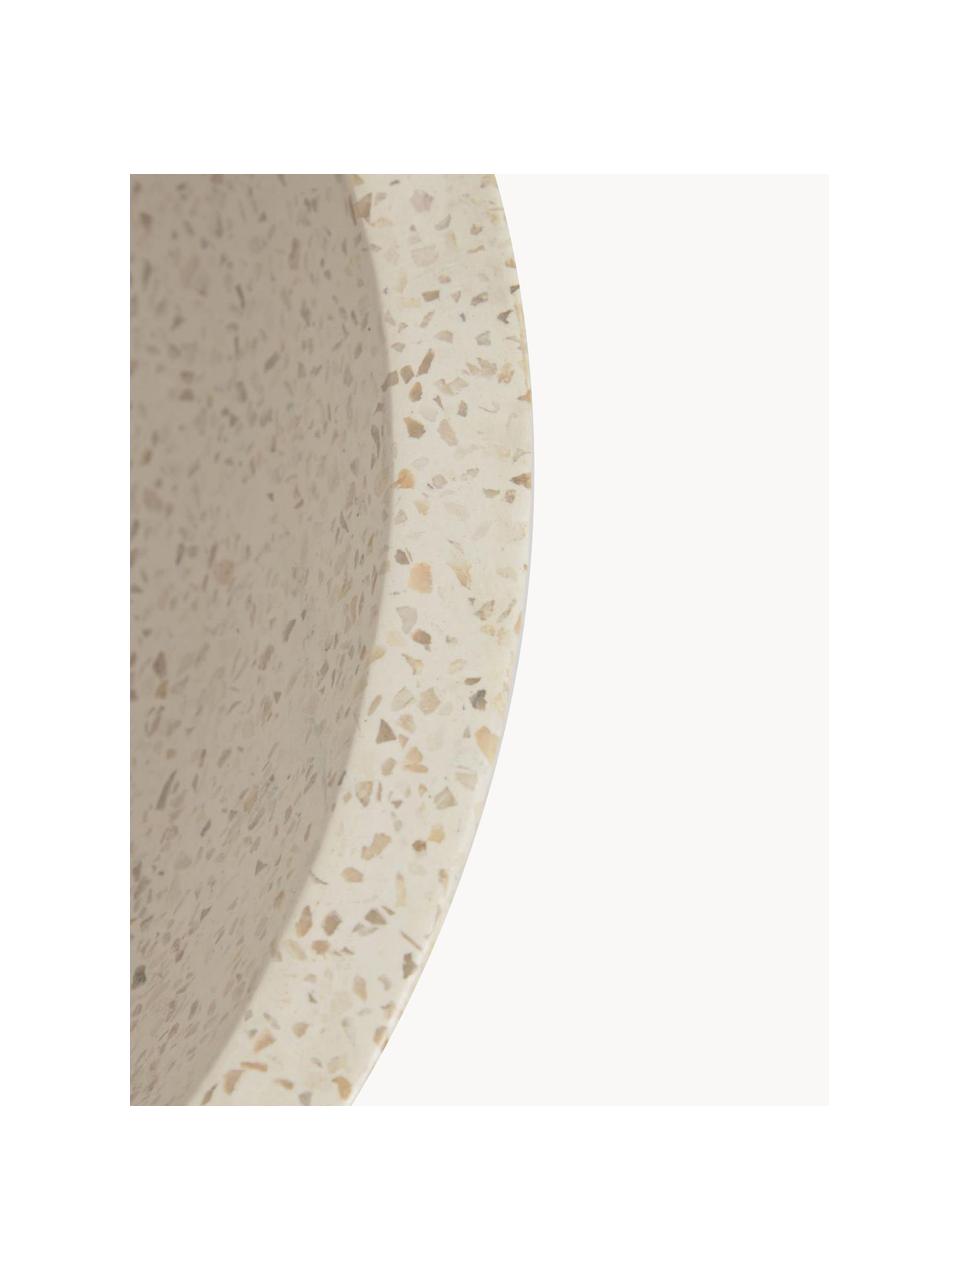 Umywalka nablatowa z lastryko Kuveni, Lastryko, Beżowy, z wzorem lastryko, Ø 40 x W 11 cm